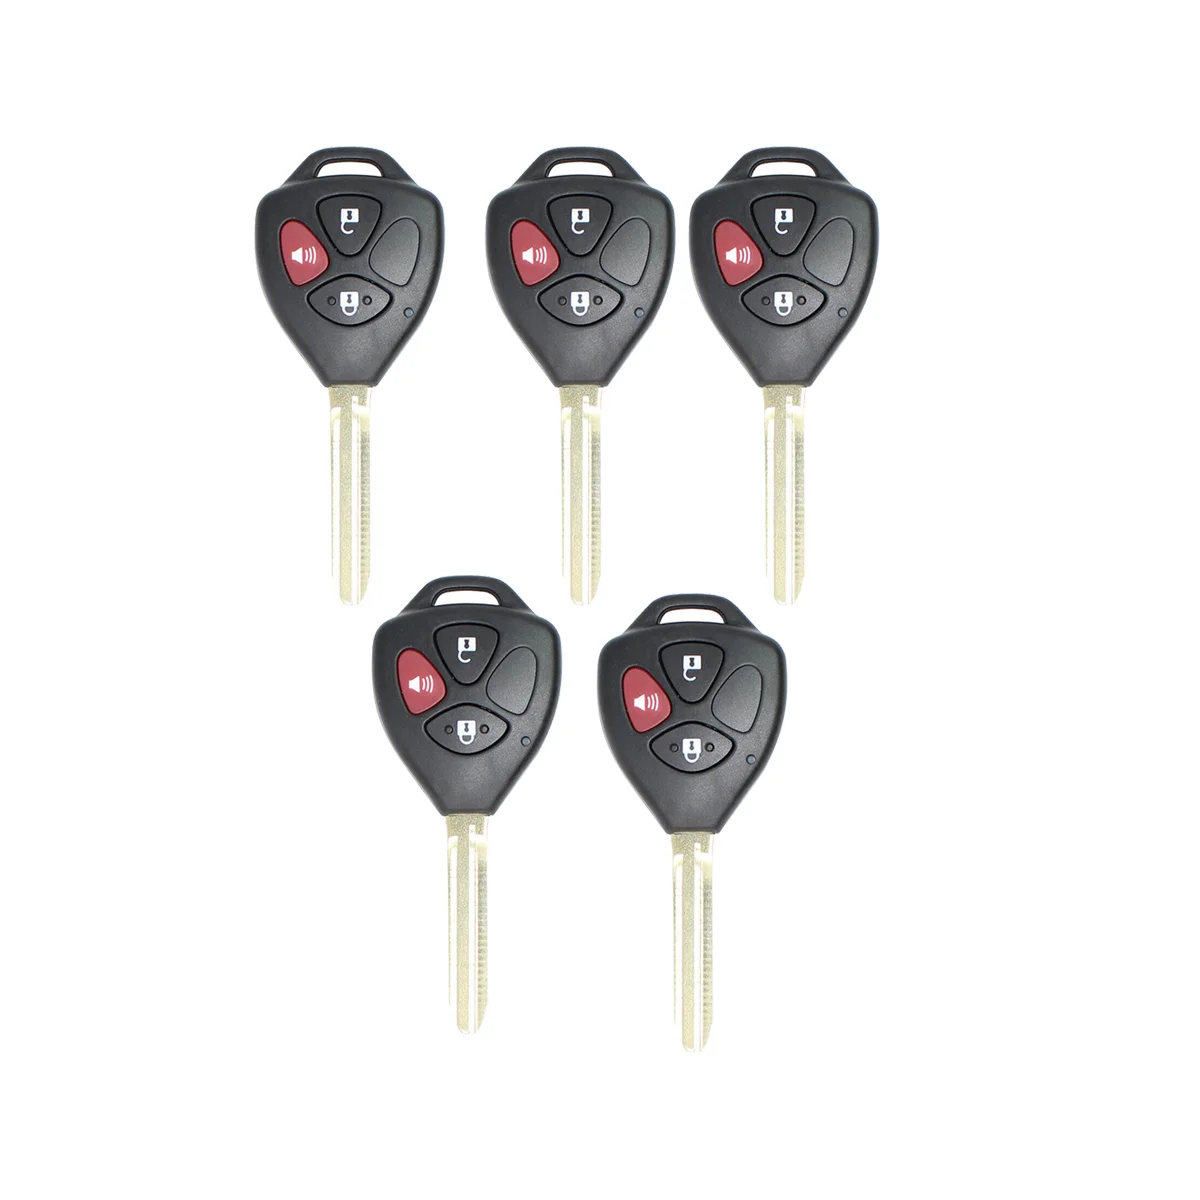 Xhorse XKTO04EN Универсальный проводной дистанционный брелок с 3 кнопками для Toyota Style для VVDI Key Tool 5 шт./лот1